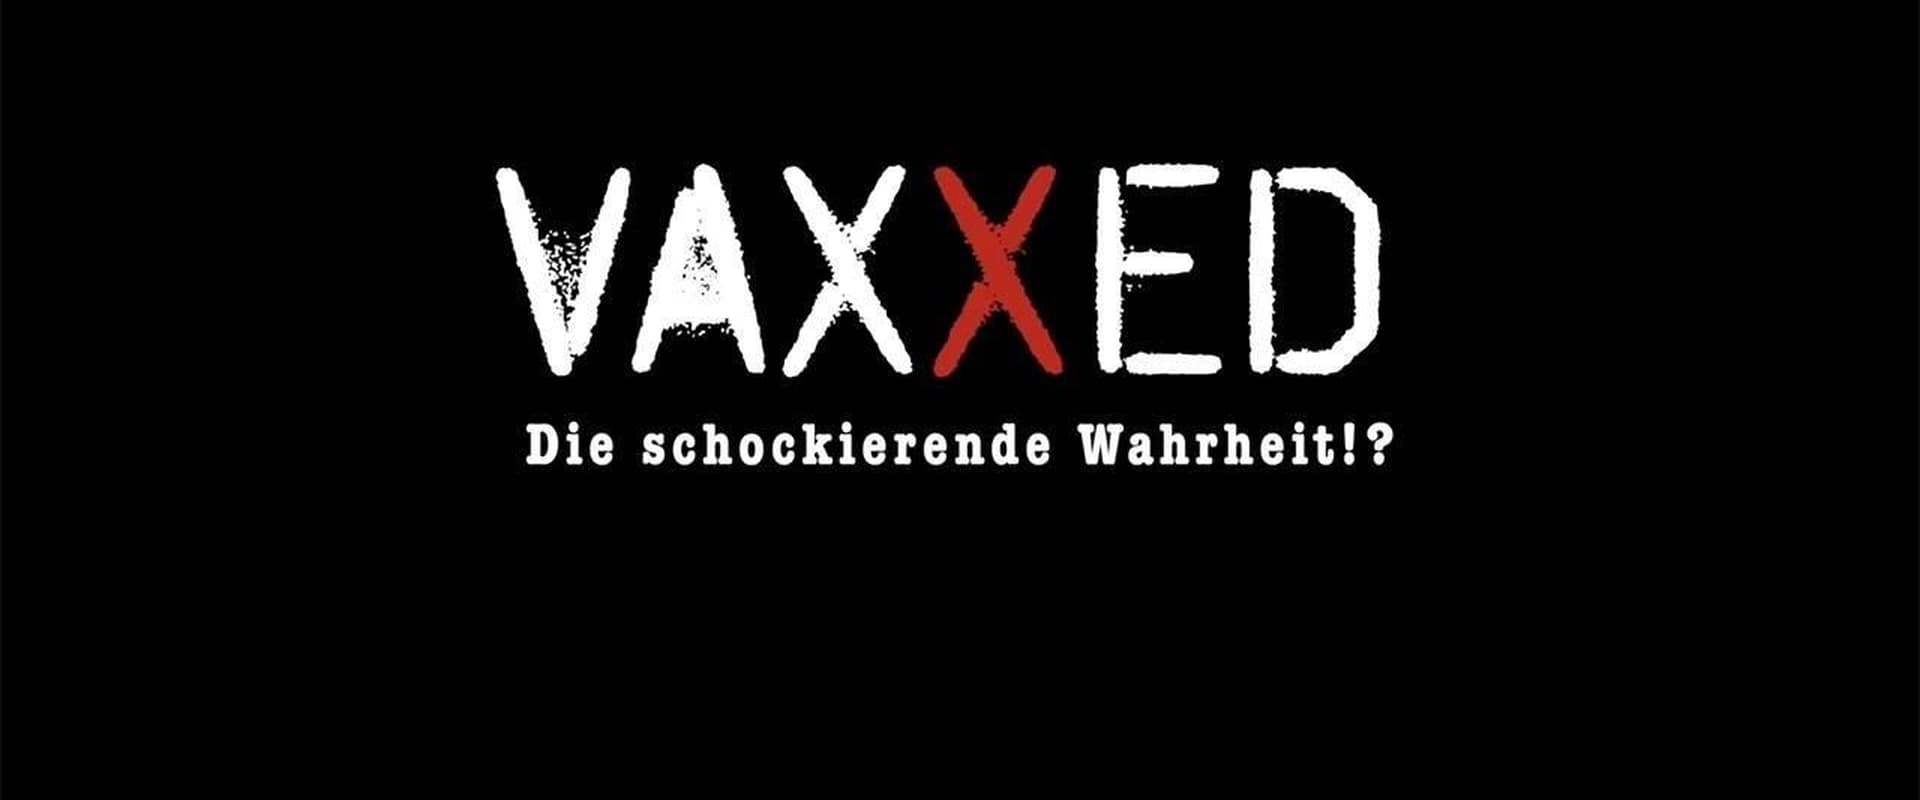 VAXXED - Die schockierende Wahrheit